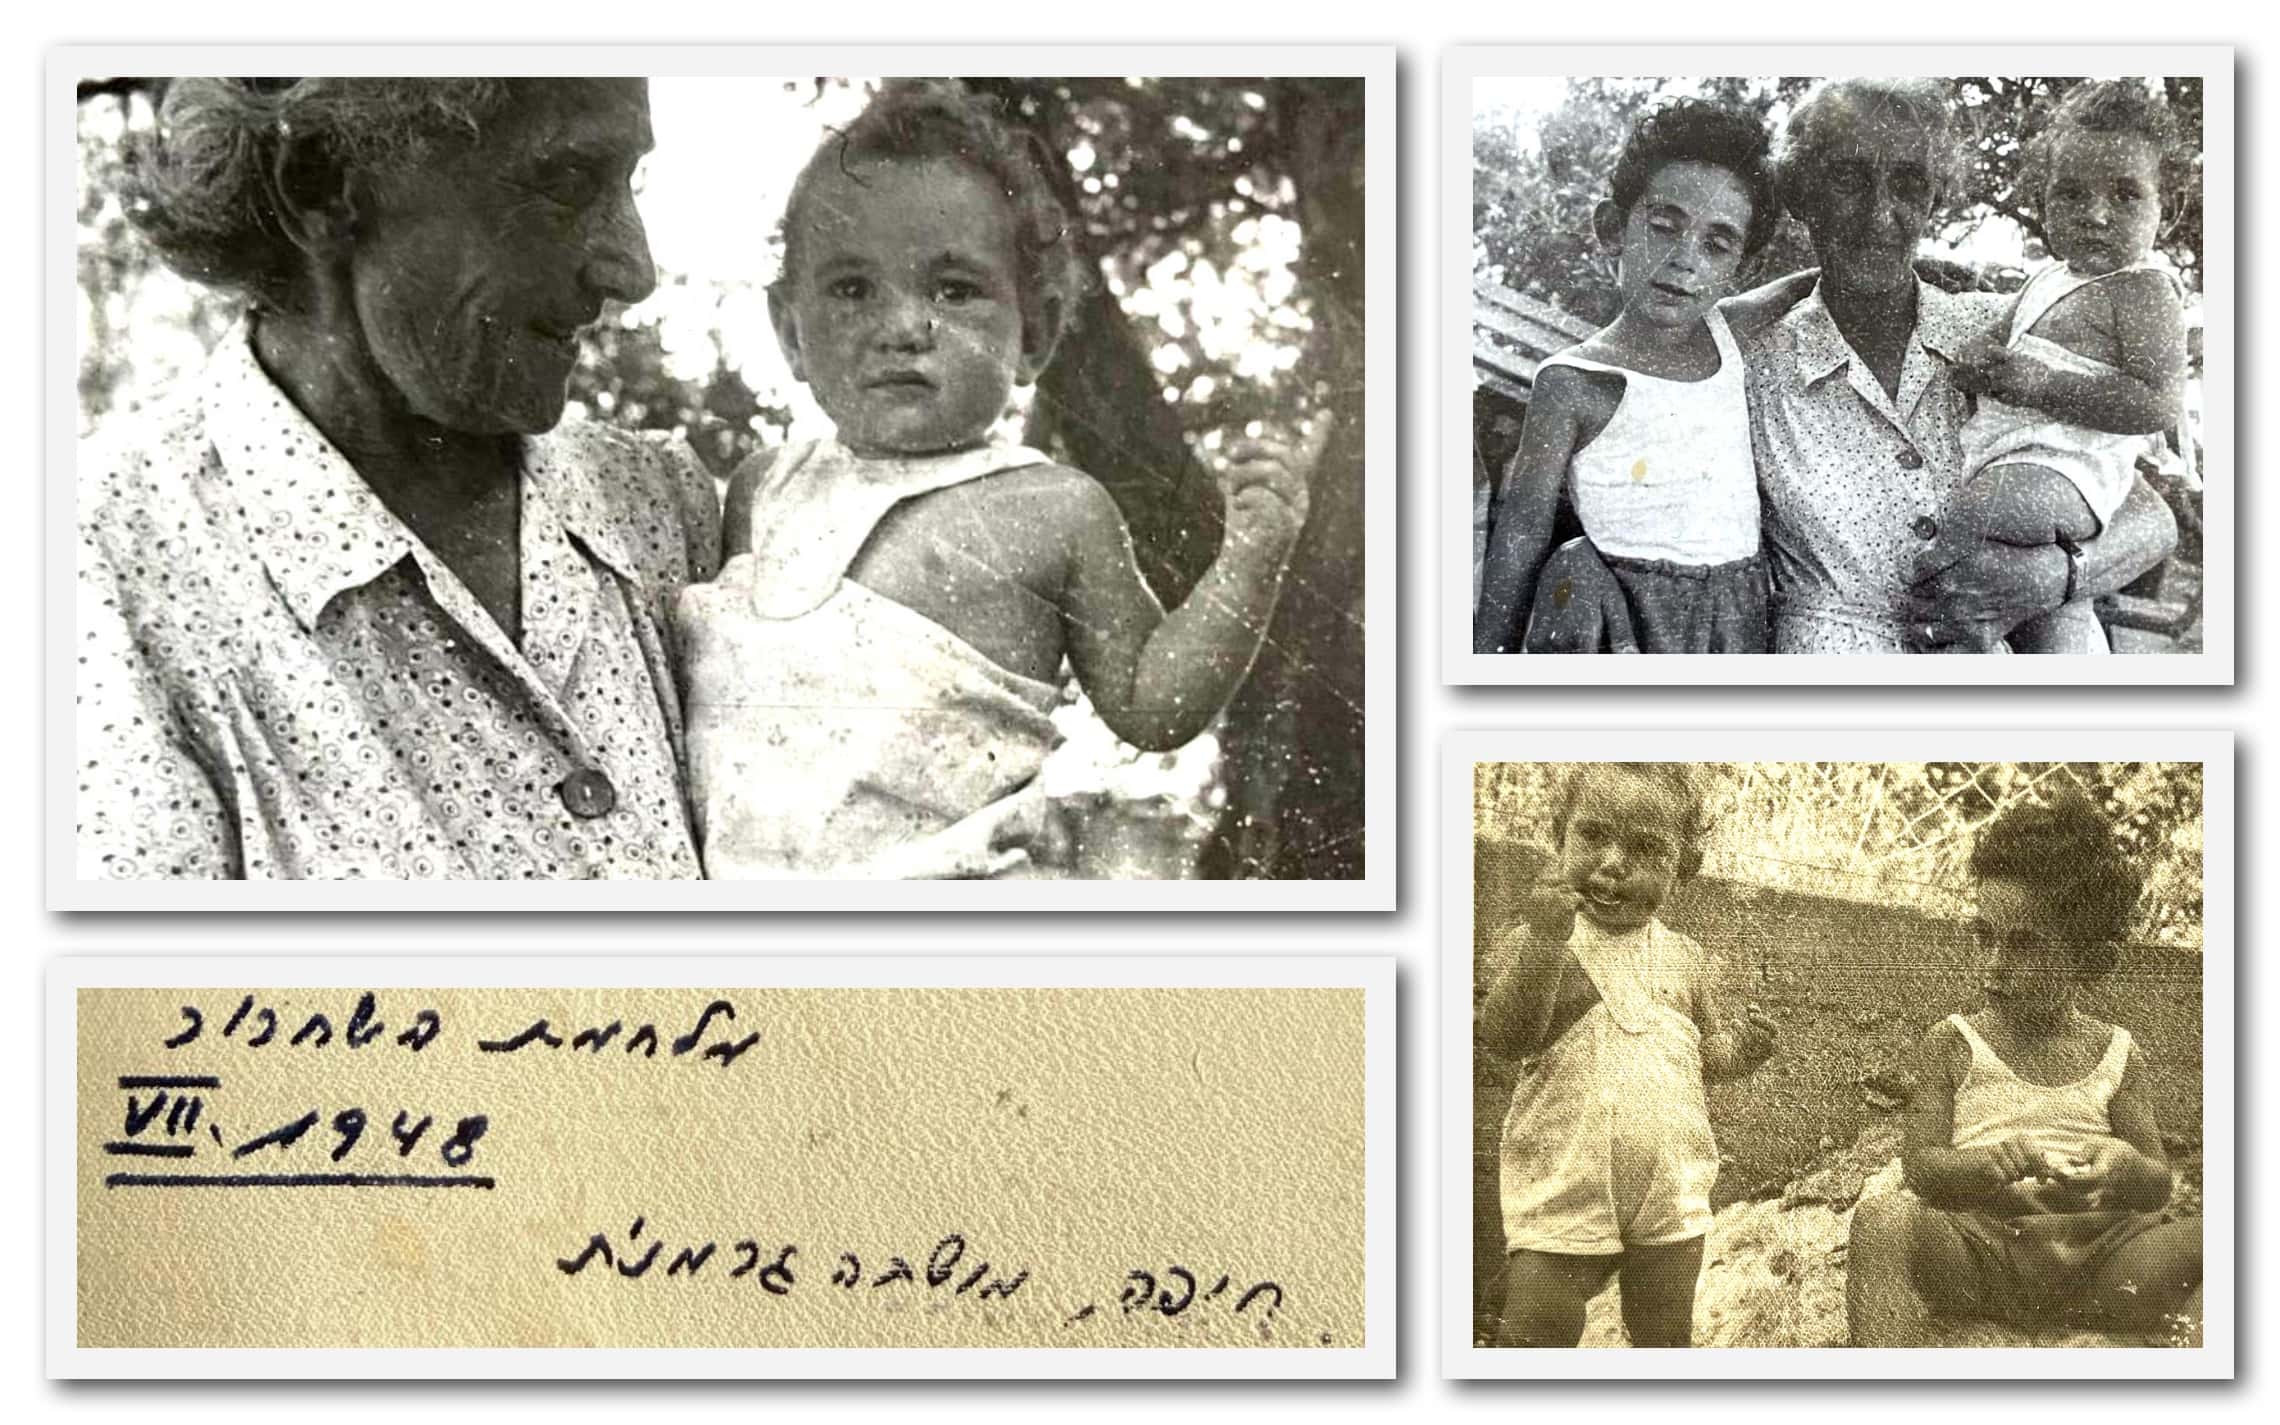 אהרונה סדן עם אחיה וסבתה בעת הפינוי של קיבוץ דפנה לחיפה ב-1948. כתב היד הוא של אביה של אהרונה (צילום: באדיבות אהרונה סדן)